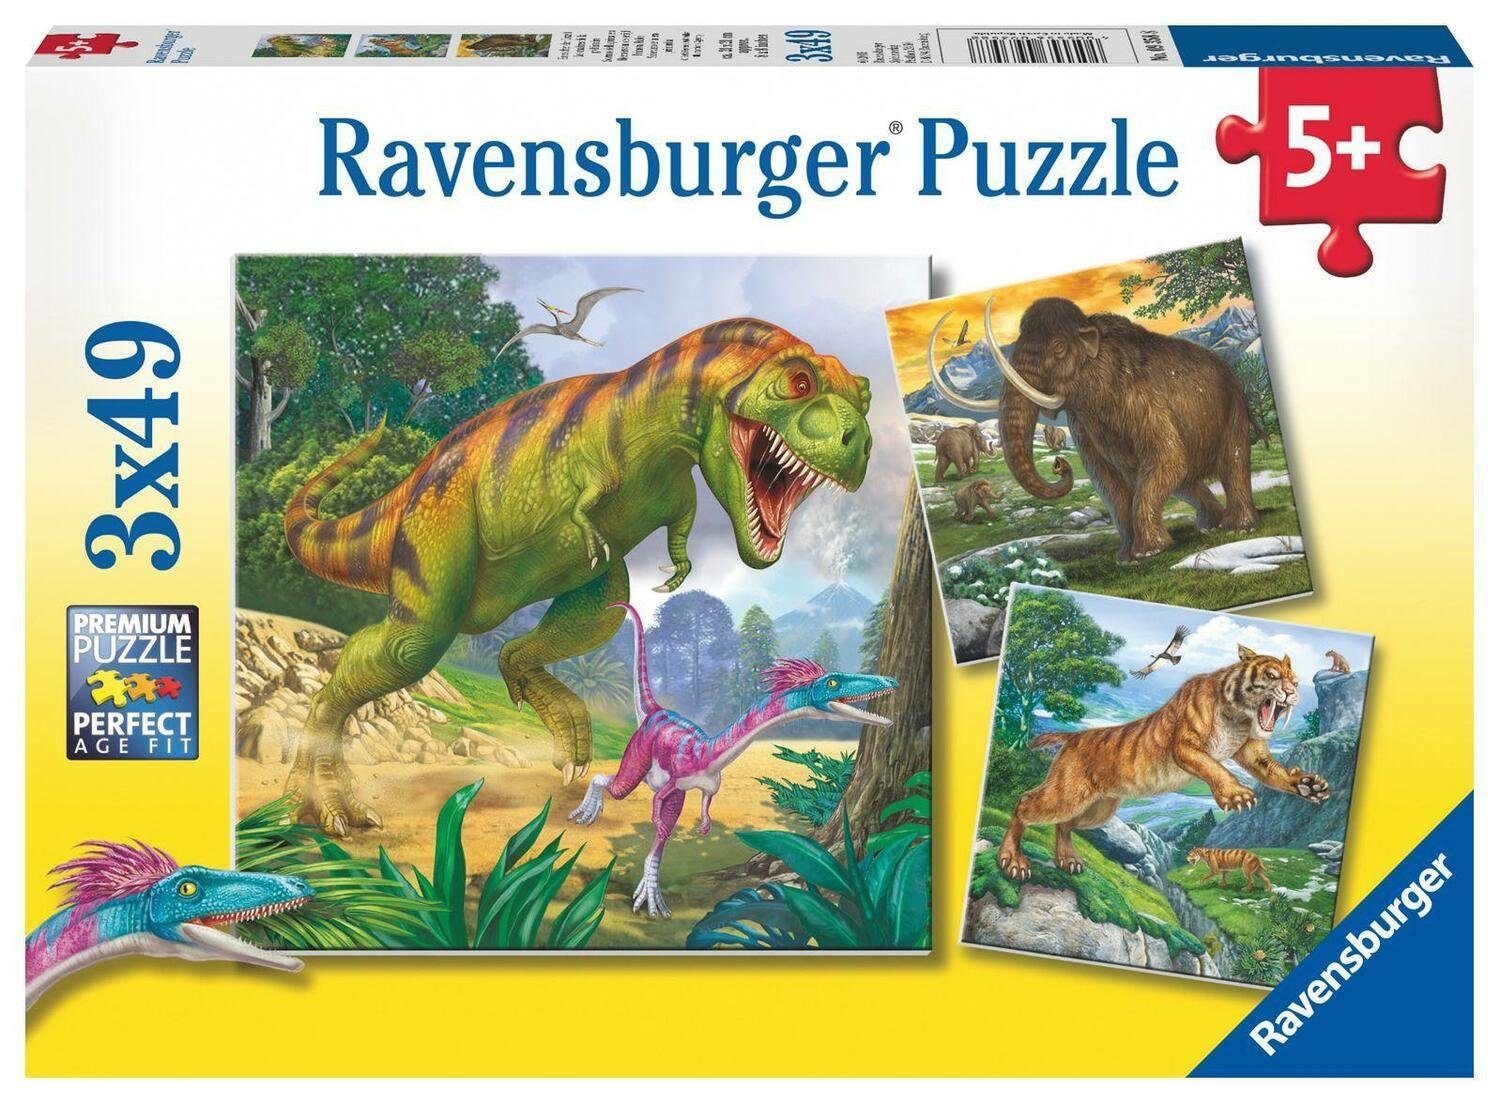 Ravensburger Puzzle Herrscher der Urzeit. Puzzle 3 x 49 Teile, 49 Puzzleteile